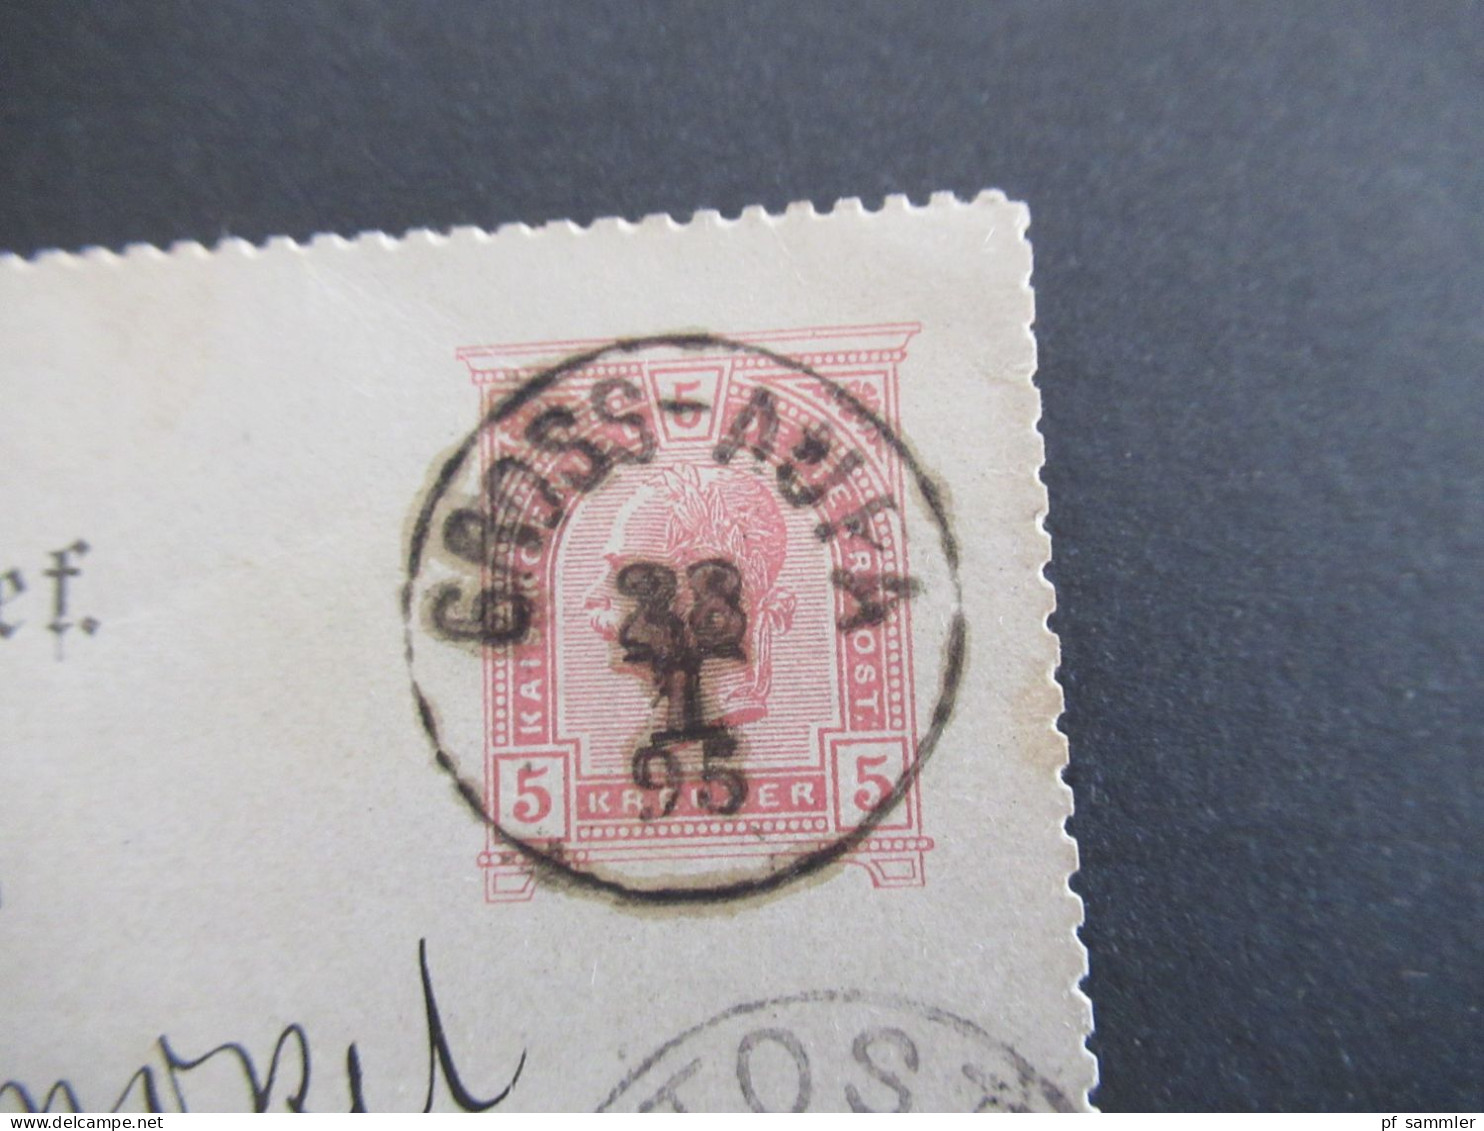 1895 Österreich / Tschechien Riesengebirge Kartenbrief K1 Gross Aupa (bei Trautenau) Und Ank. Stempel K1 Tost Schlesien - Briefkaarten